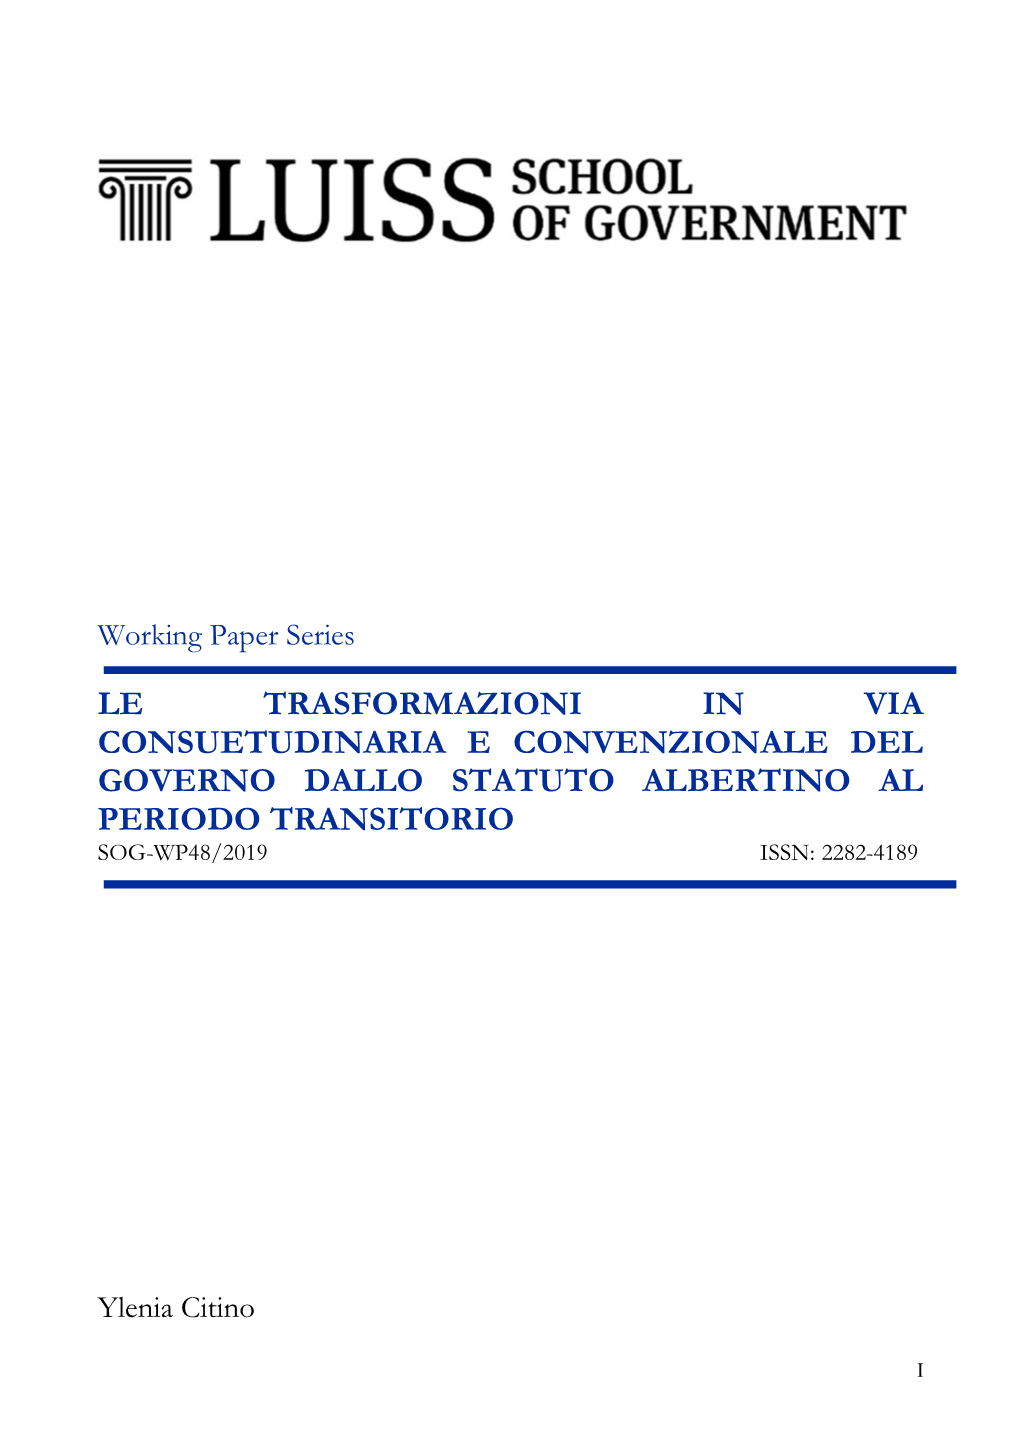 Le Trasformazioni in Via Consuetudinaria E Convenzionale Del Governo Dallo Statuto Albertino Al Periodo Transitorio Sog-Wp48/2019 Issn: 2282-4189